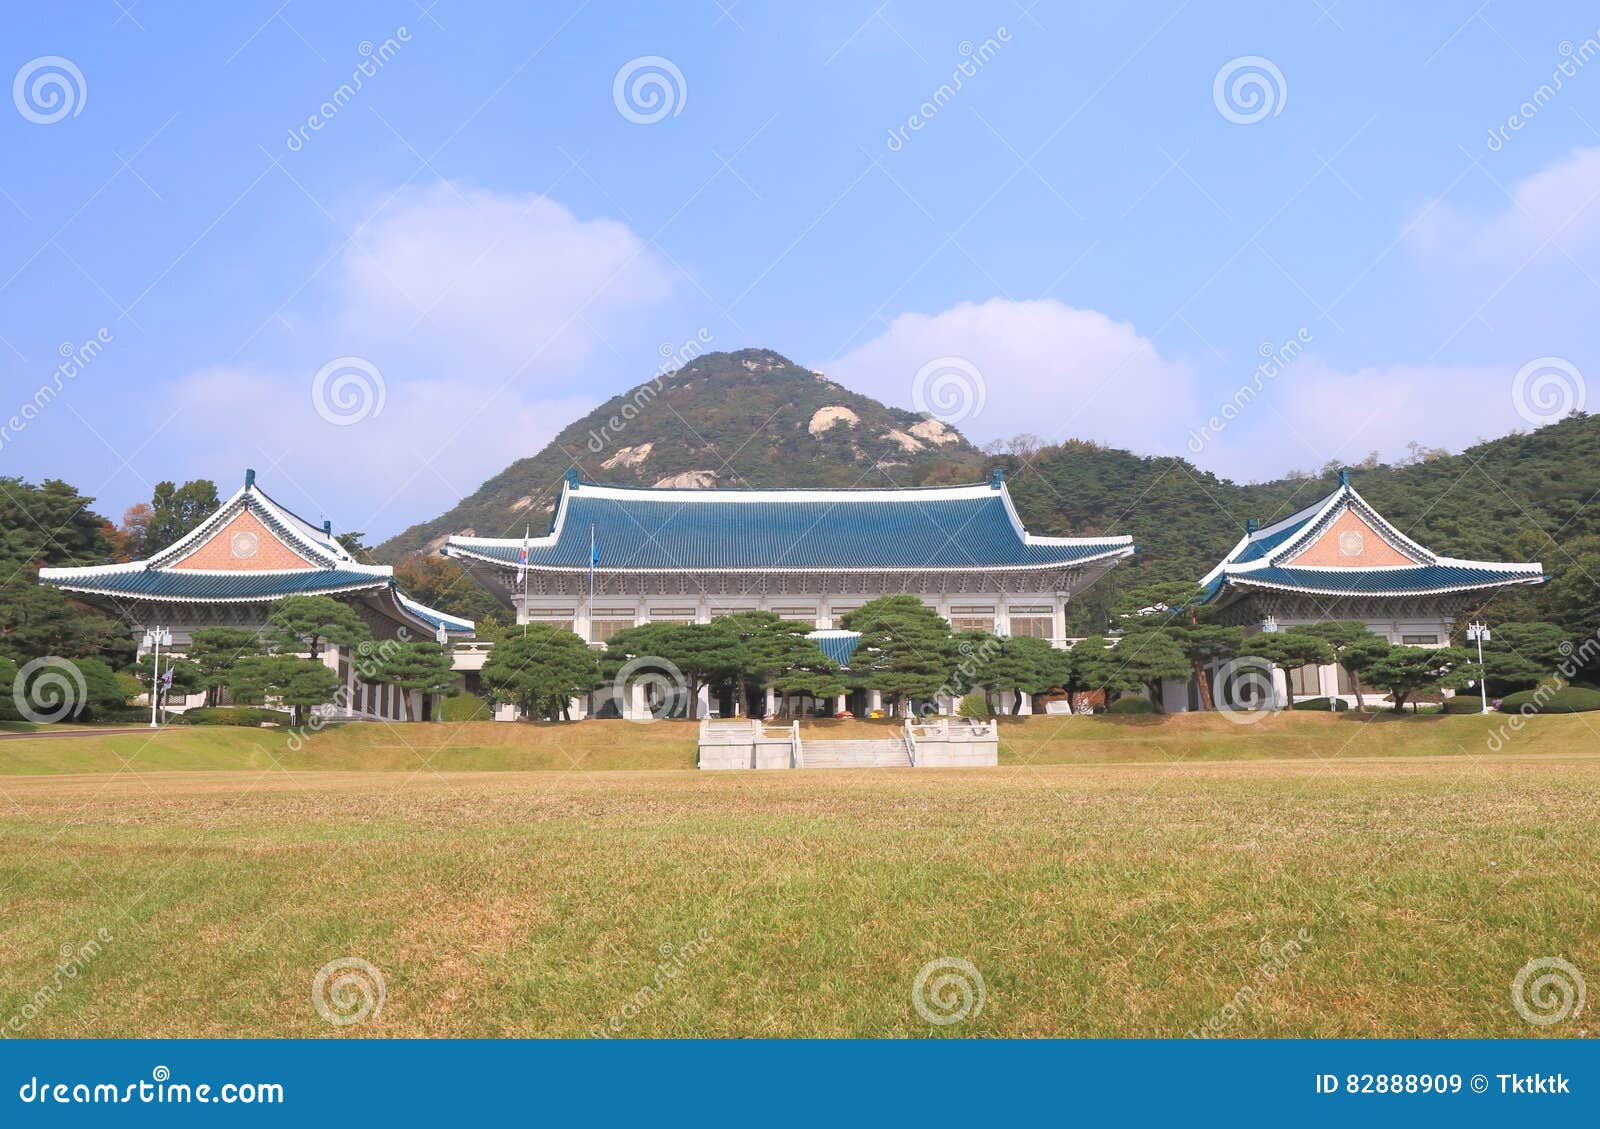 韩国新总统府名称确定 为“龙山总统府”_新浪新闻